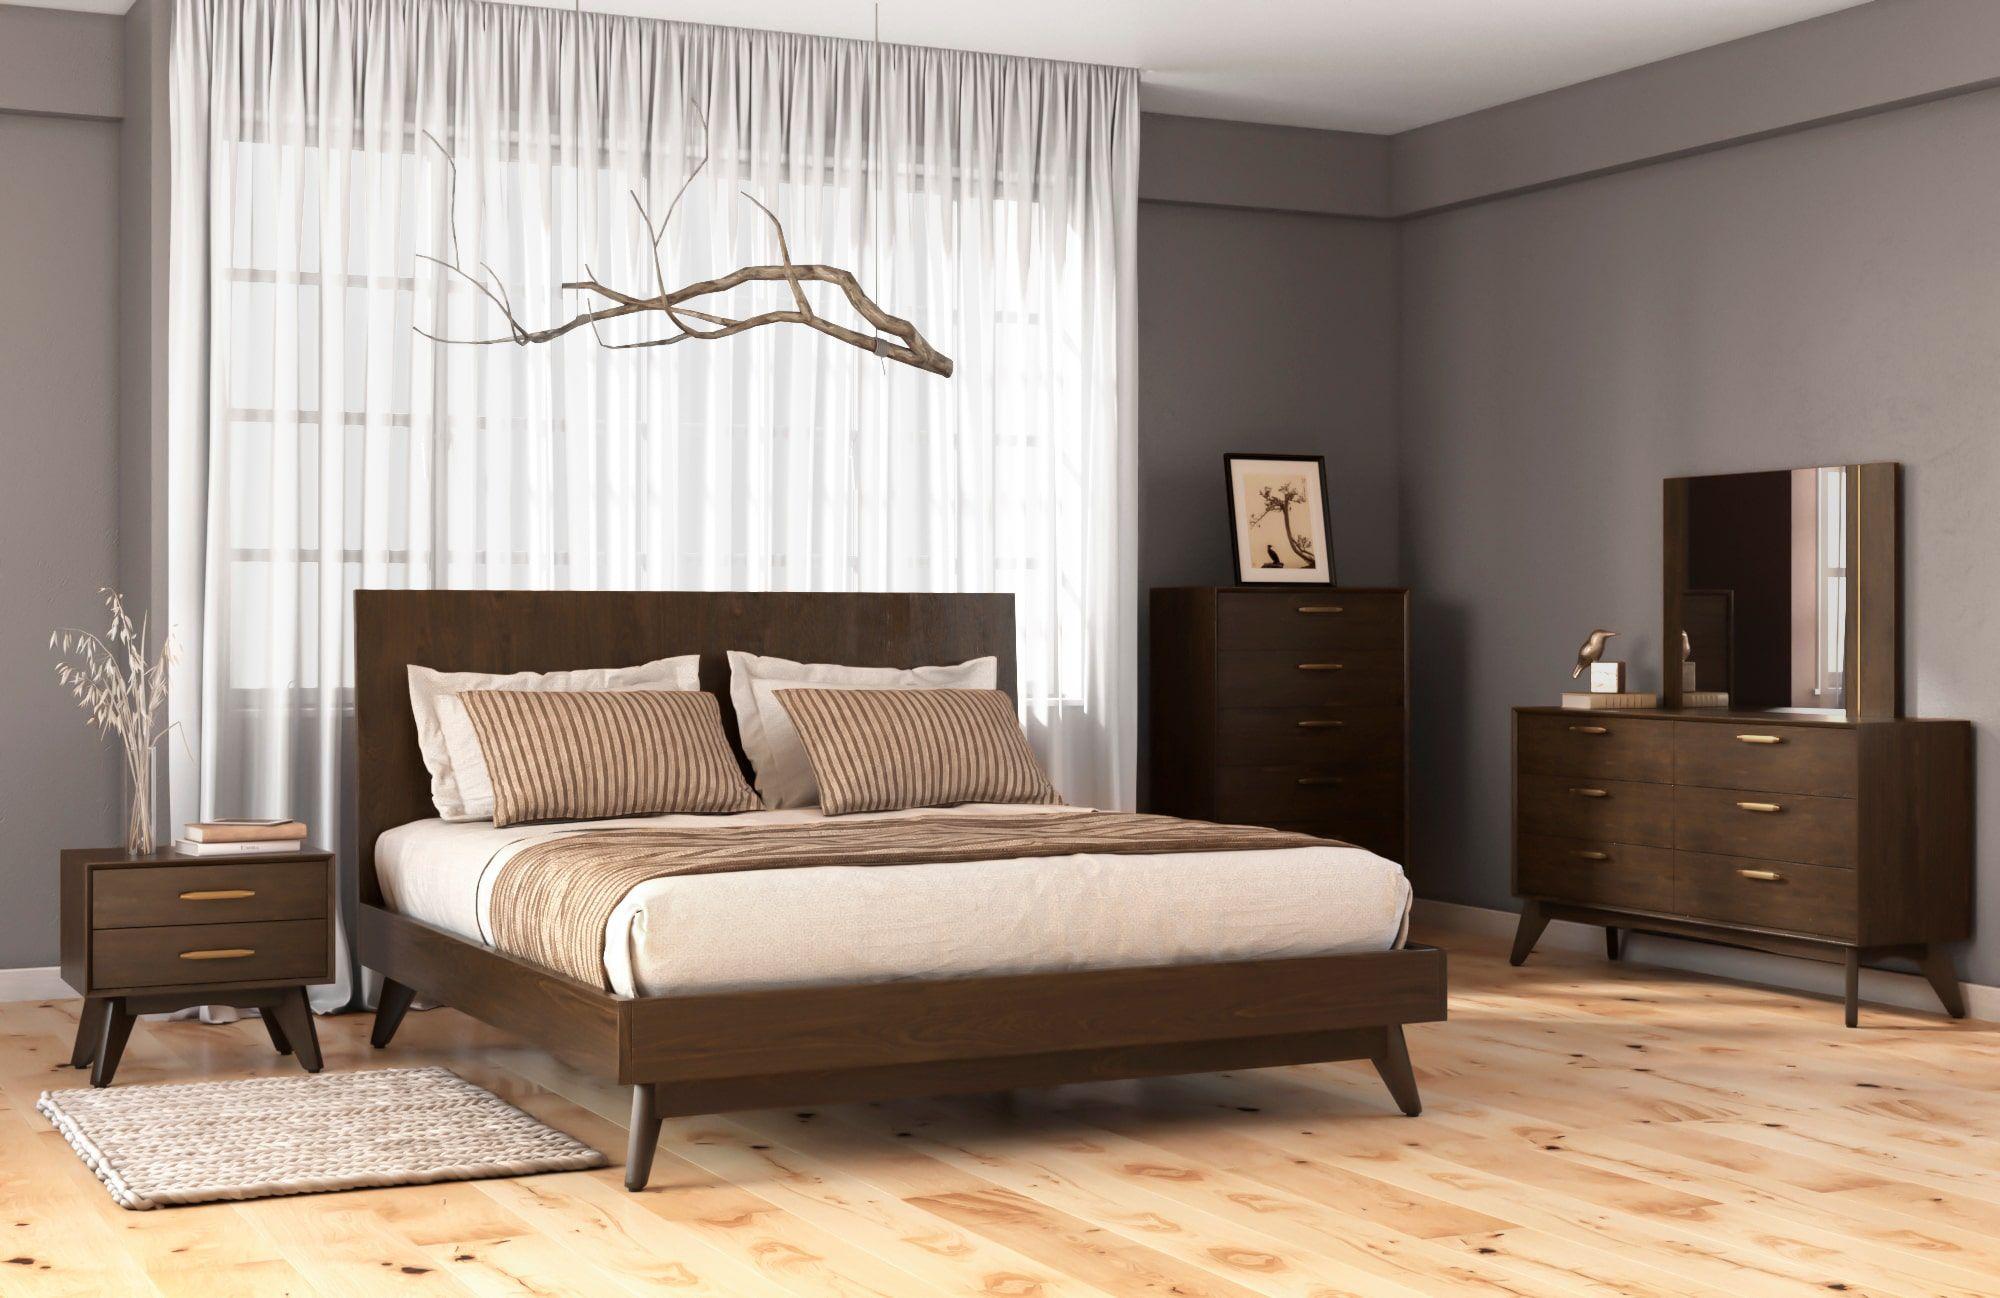 

    
VGLBNANT-BED-K VIG Furniture Panel Bed
